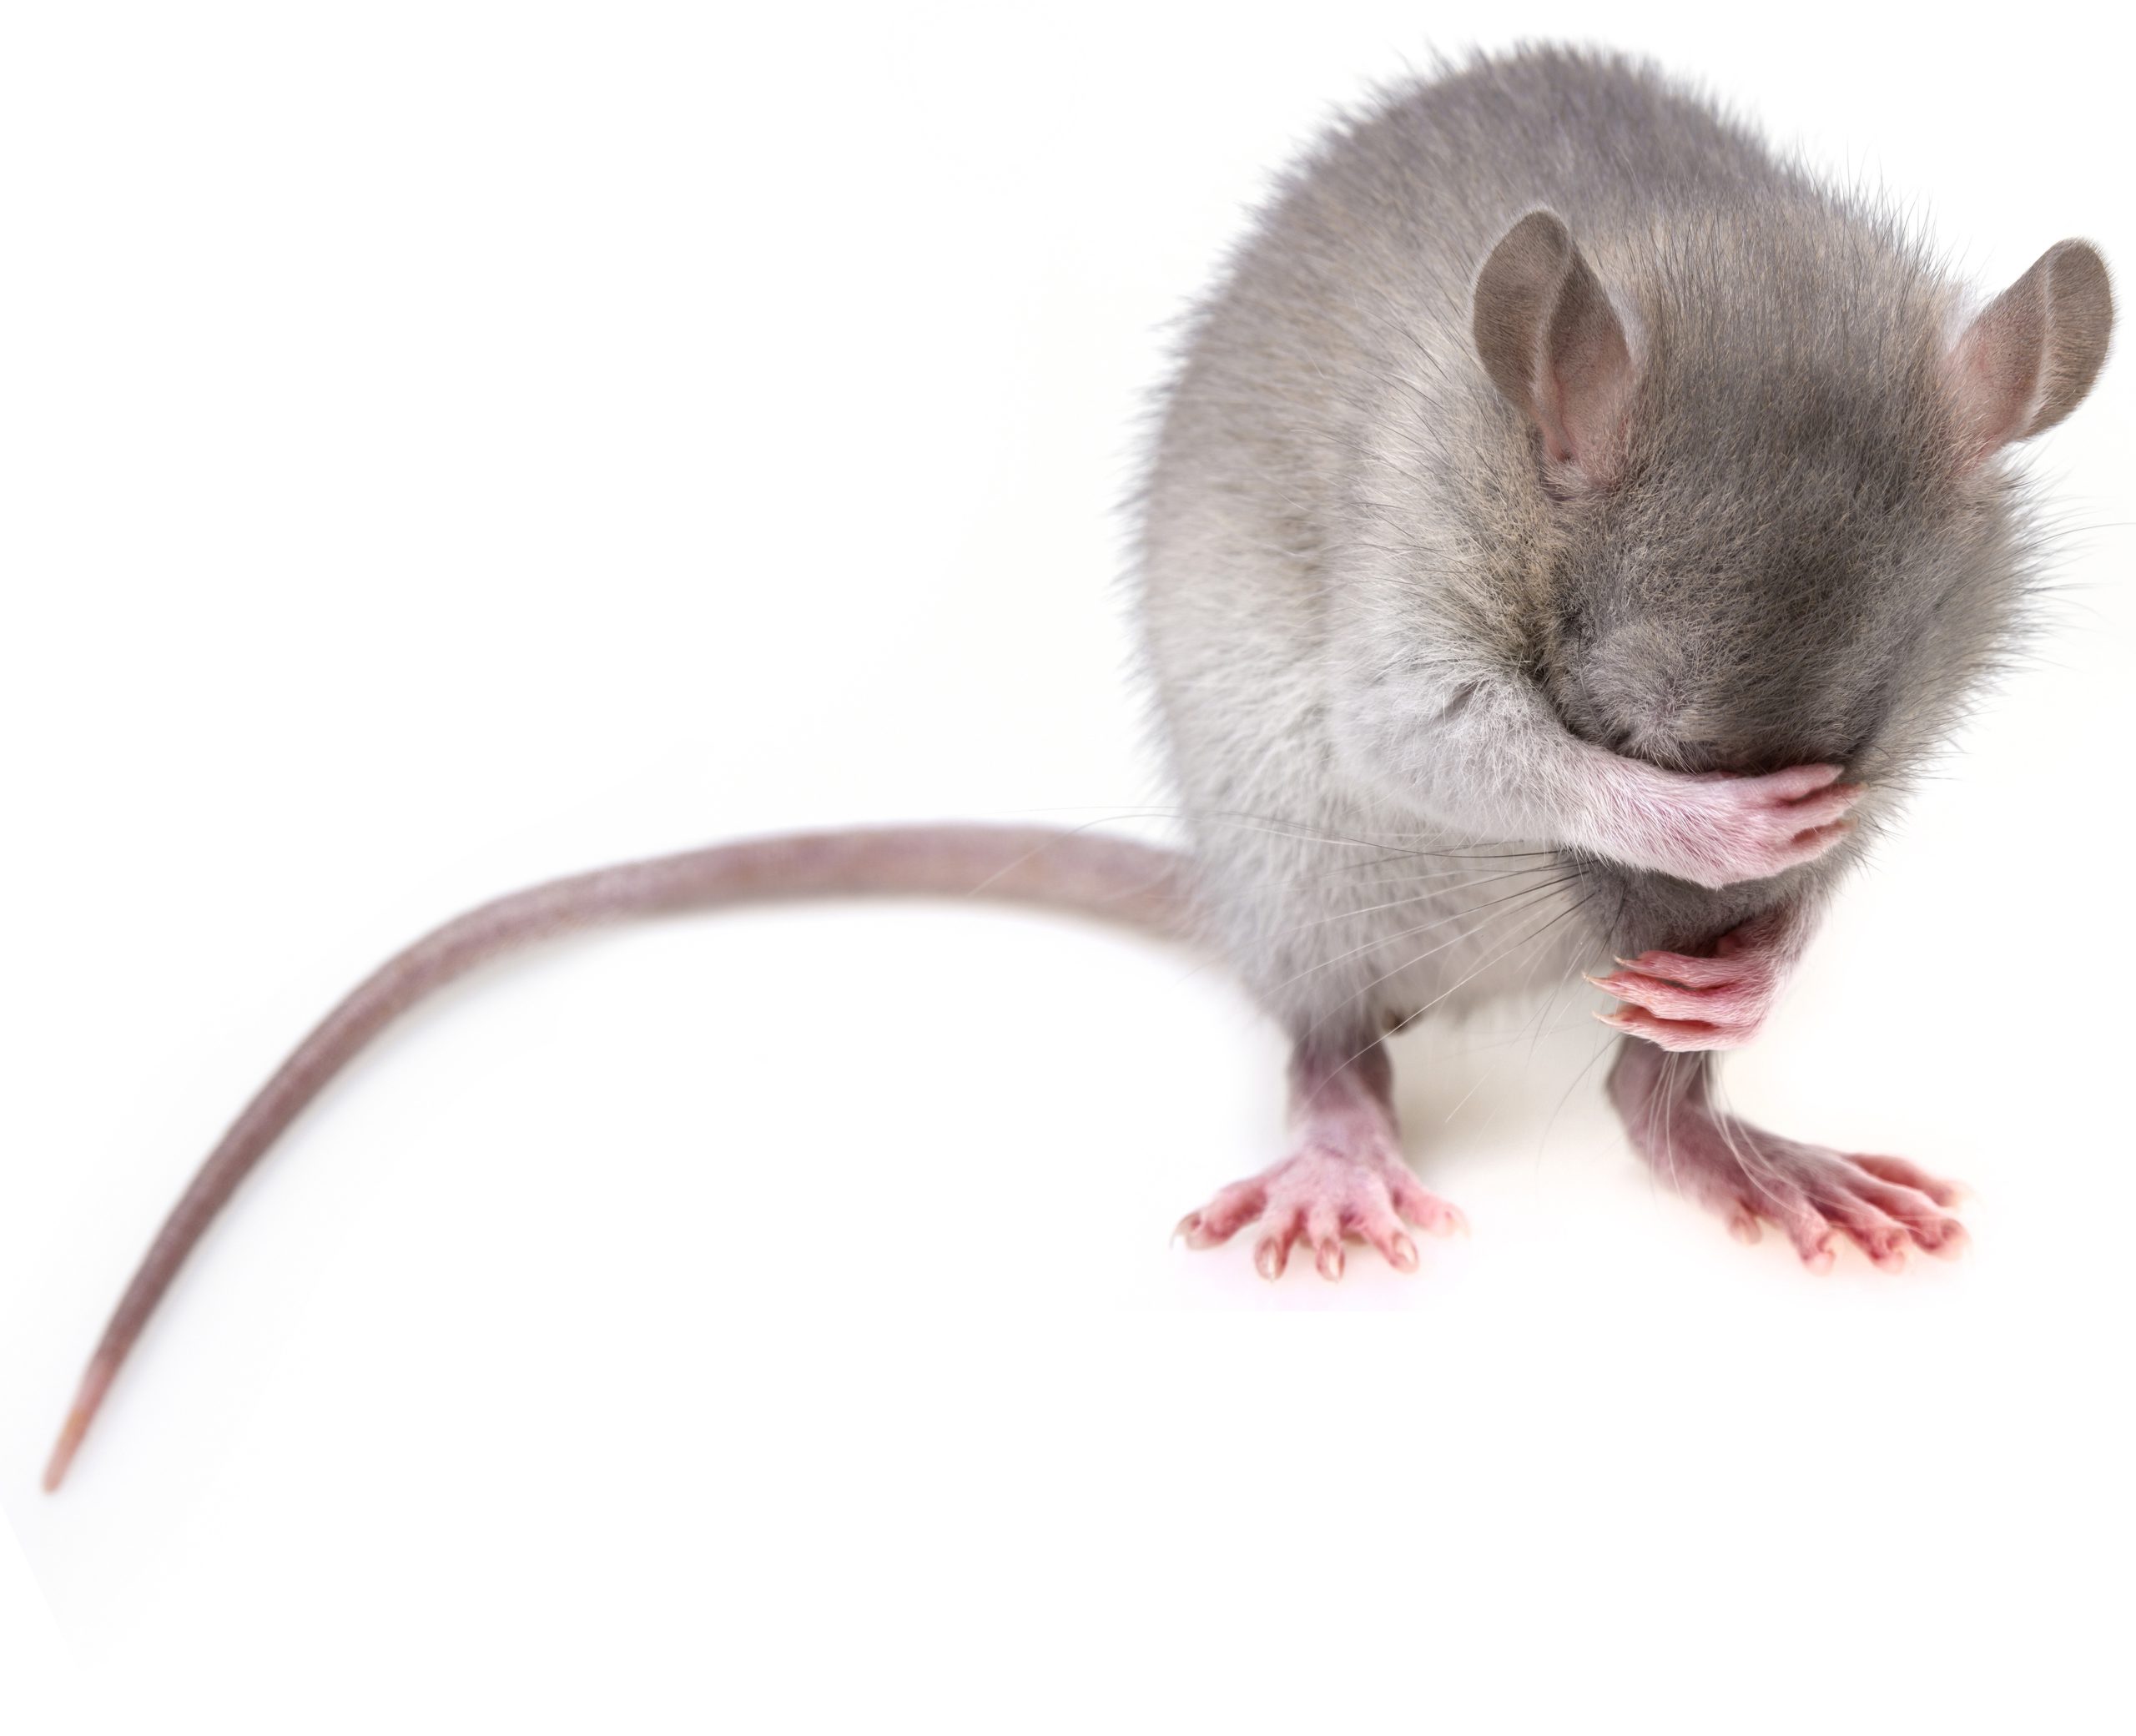 https://pixabay.com/photos/mouse-rodent-rat-mice-pest-3194768